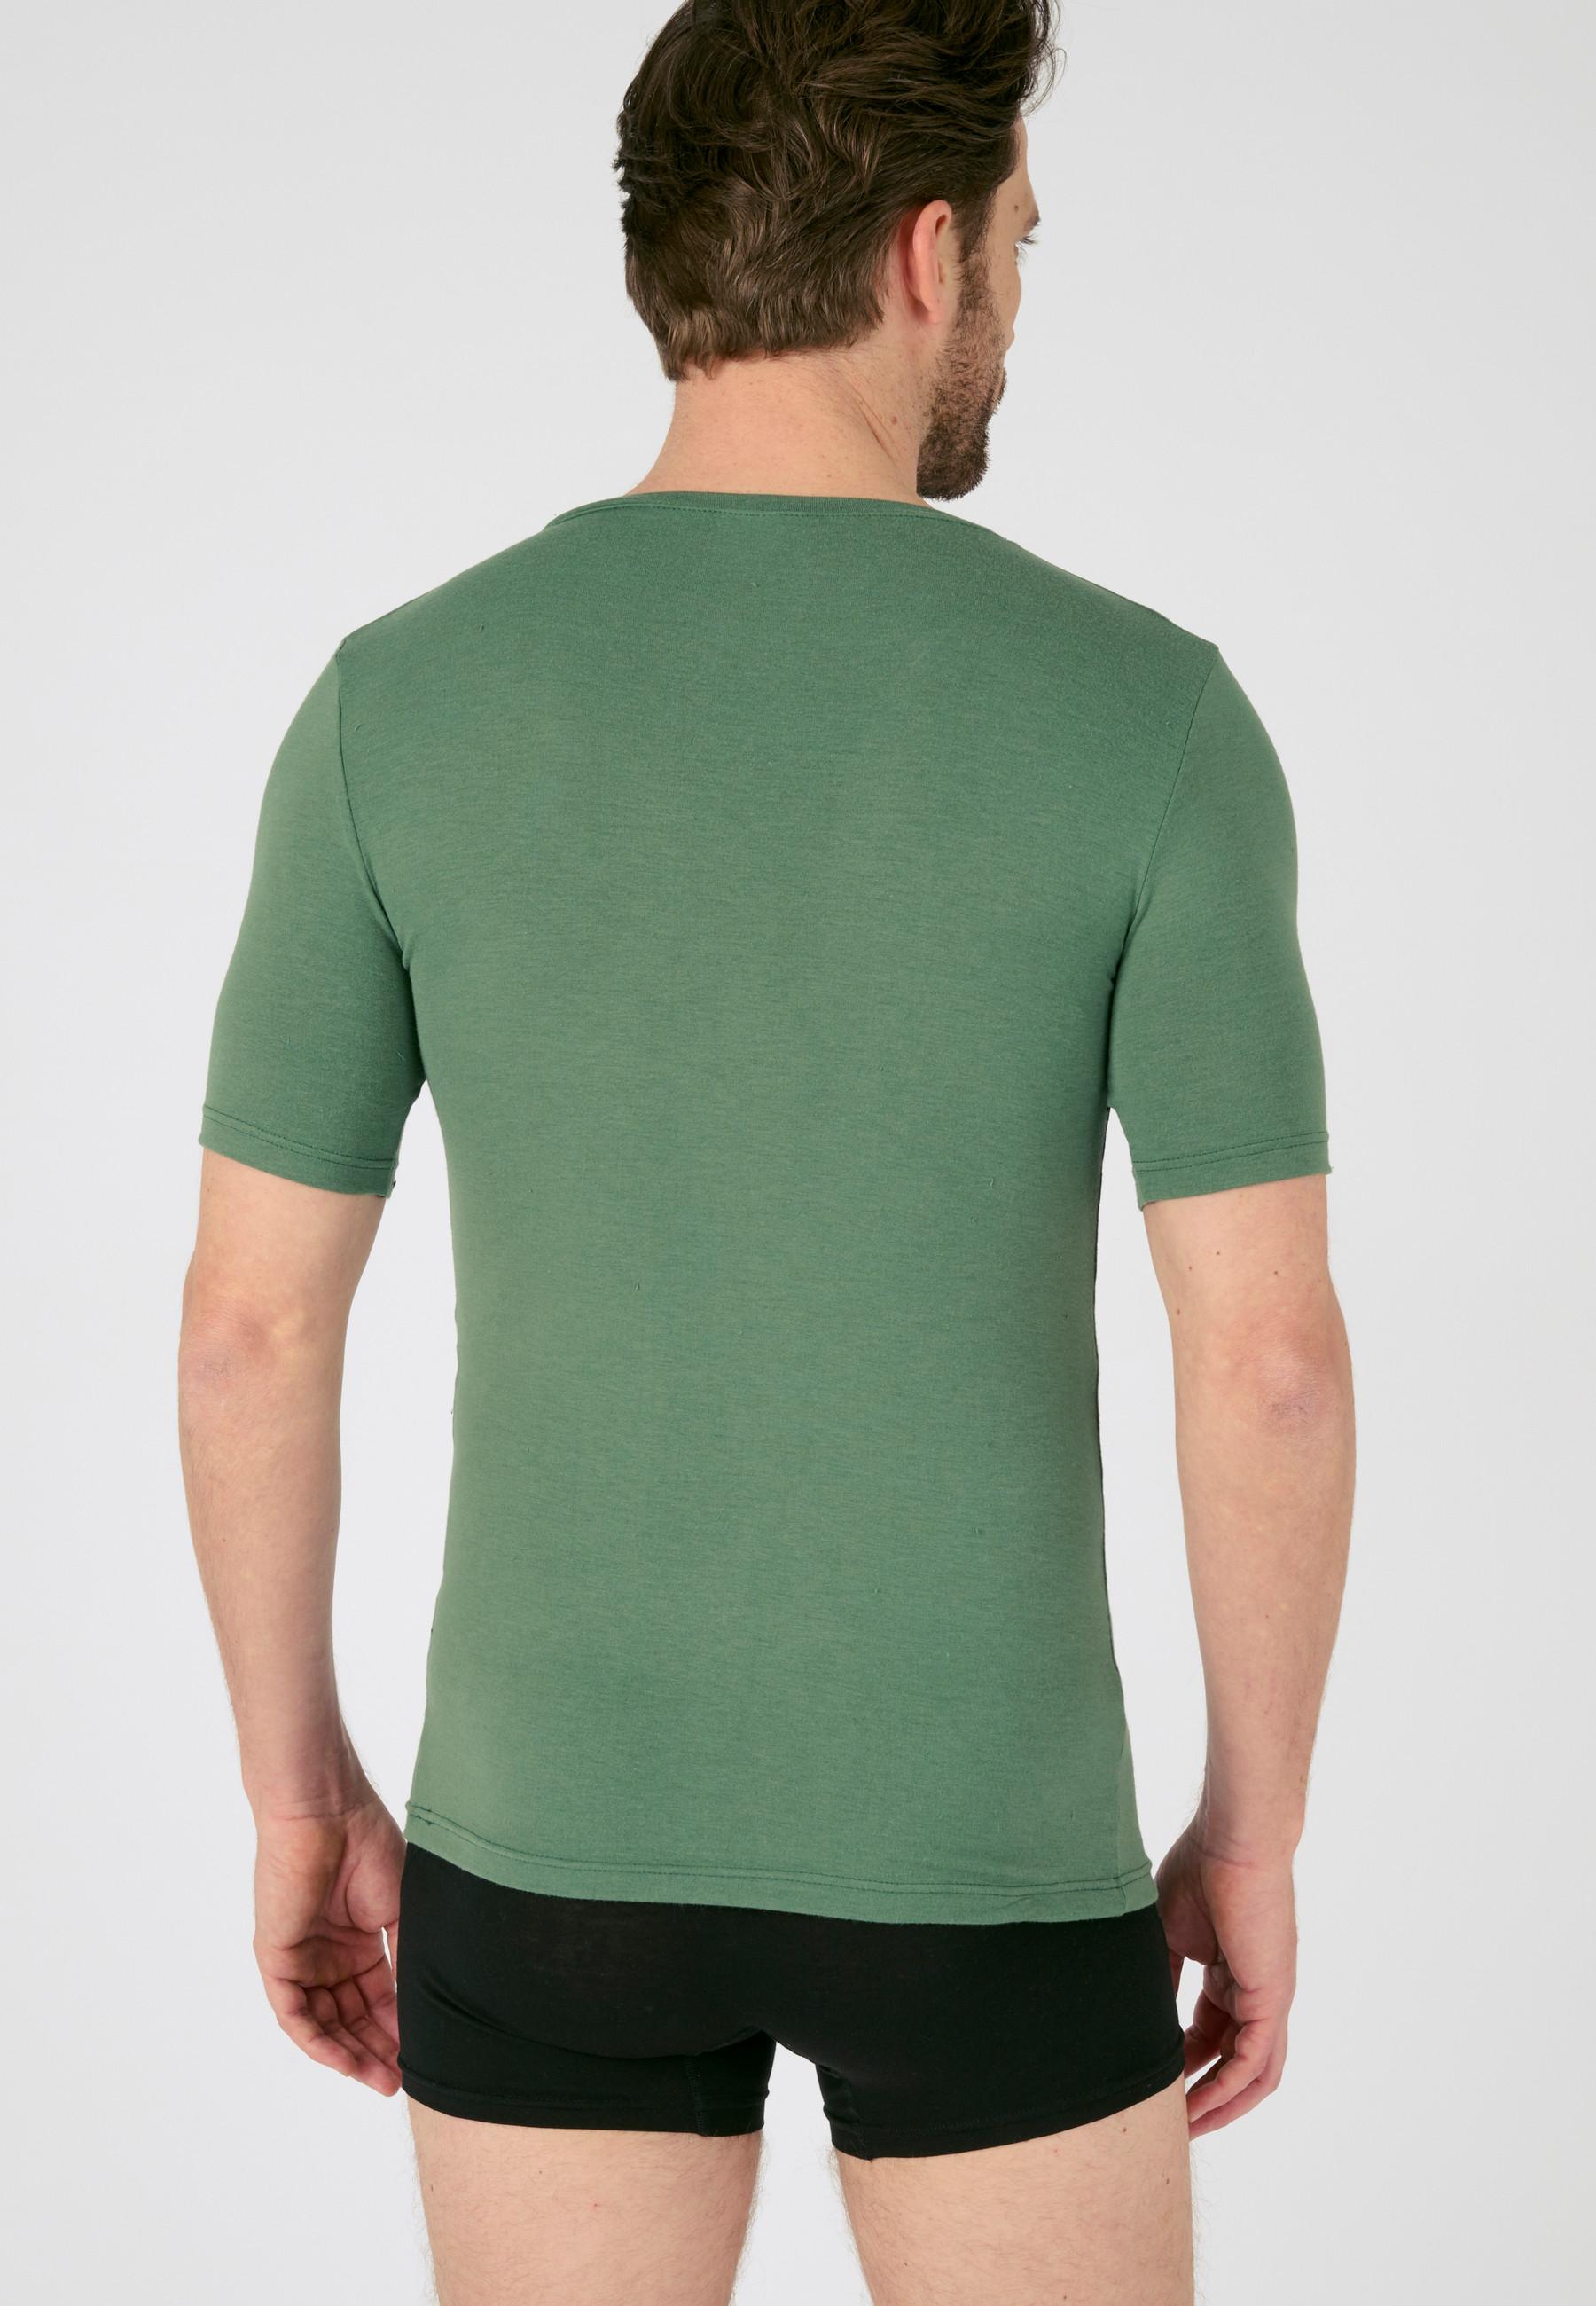 Damart  Jersey-T-Shirt aus Thermolactyl Sensitive, Wärmegrad Soft 2. 